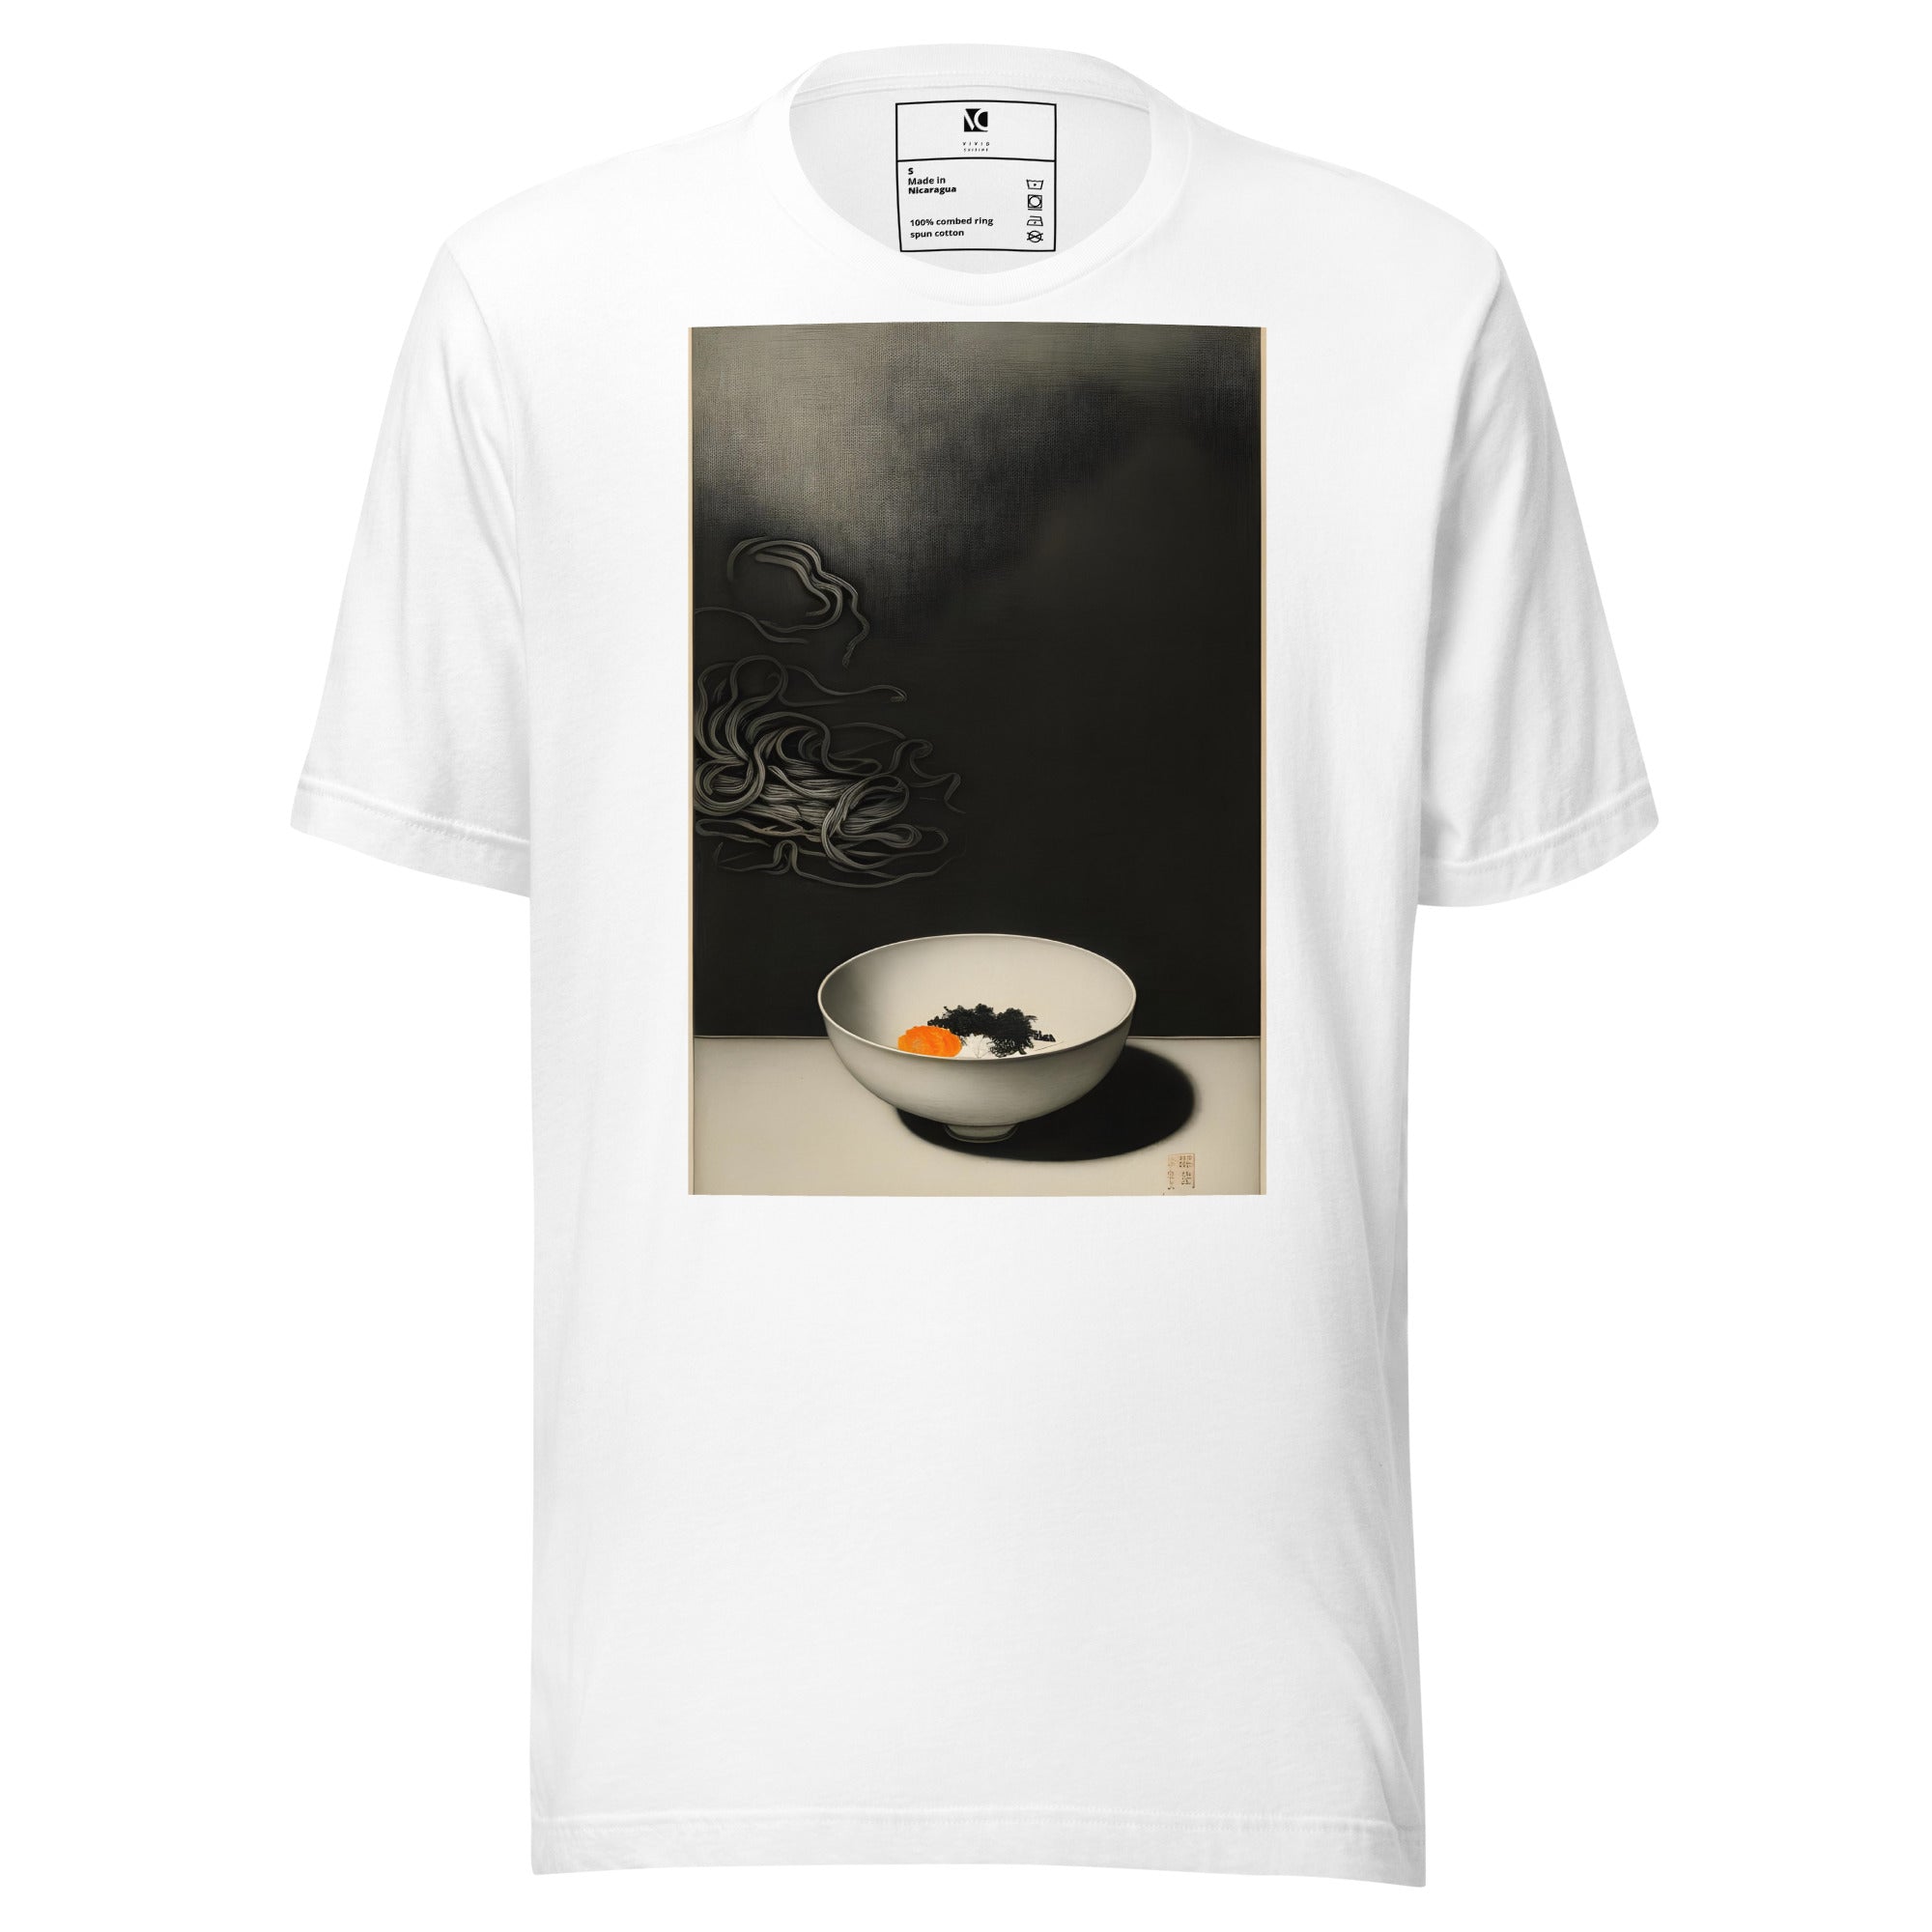 Ramen Storm - Unisex T-Shirt